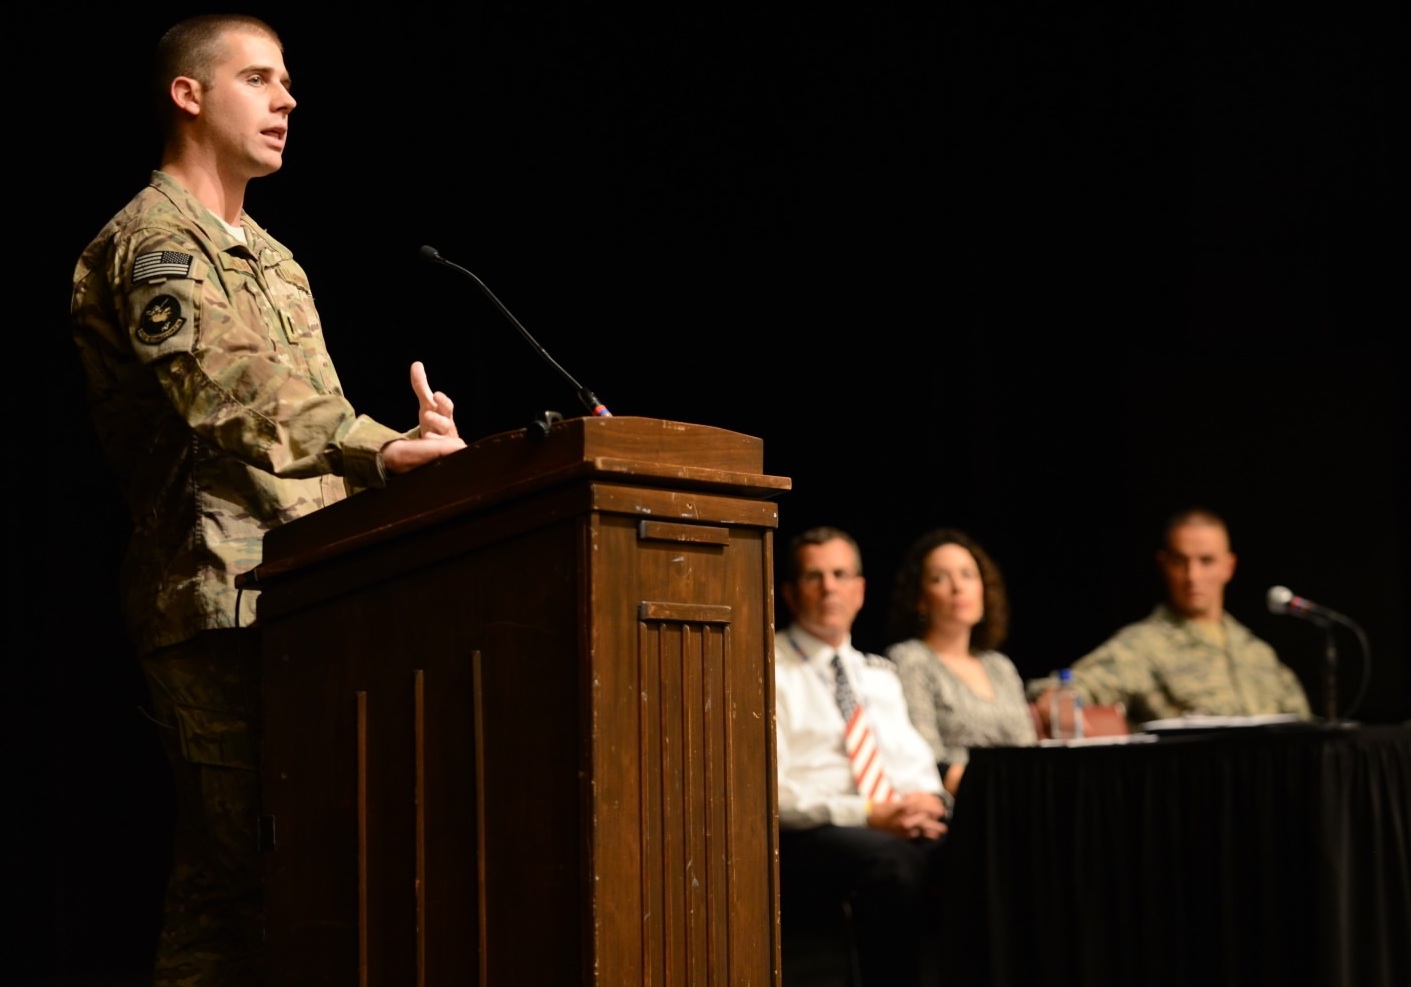 Returning alumni speak to the cadet regiment at the Fall 2013 Gunfighter Panel in the Burruss Hall auditorium.